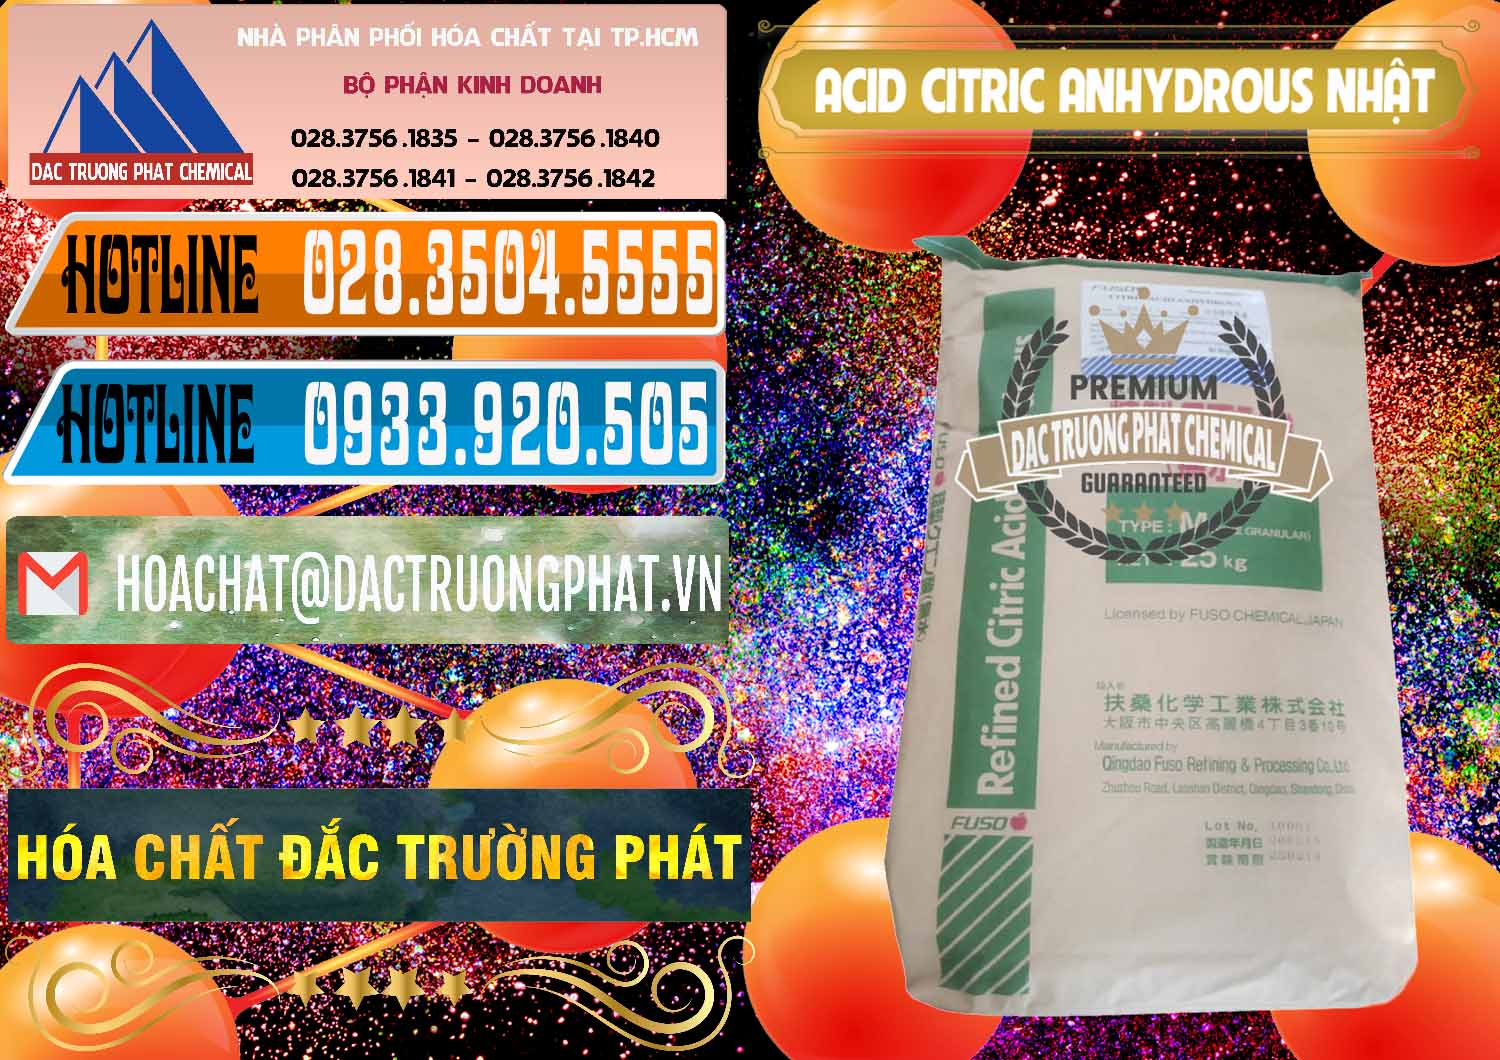 Nơi chuyên nhập khẩu và bán Acid Citric - Axit Citric Anhydrous FUSO Nhật Japan - 0439 - Cty chuyên kinh doanh và phân phối hóa chất tại TP.HCM - stmp.net